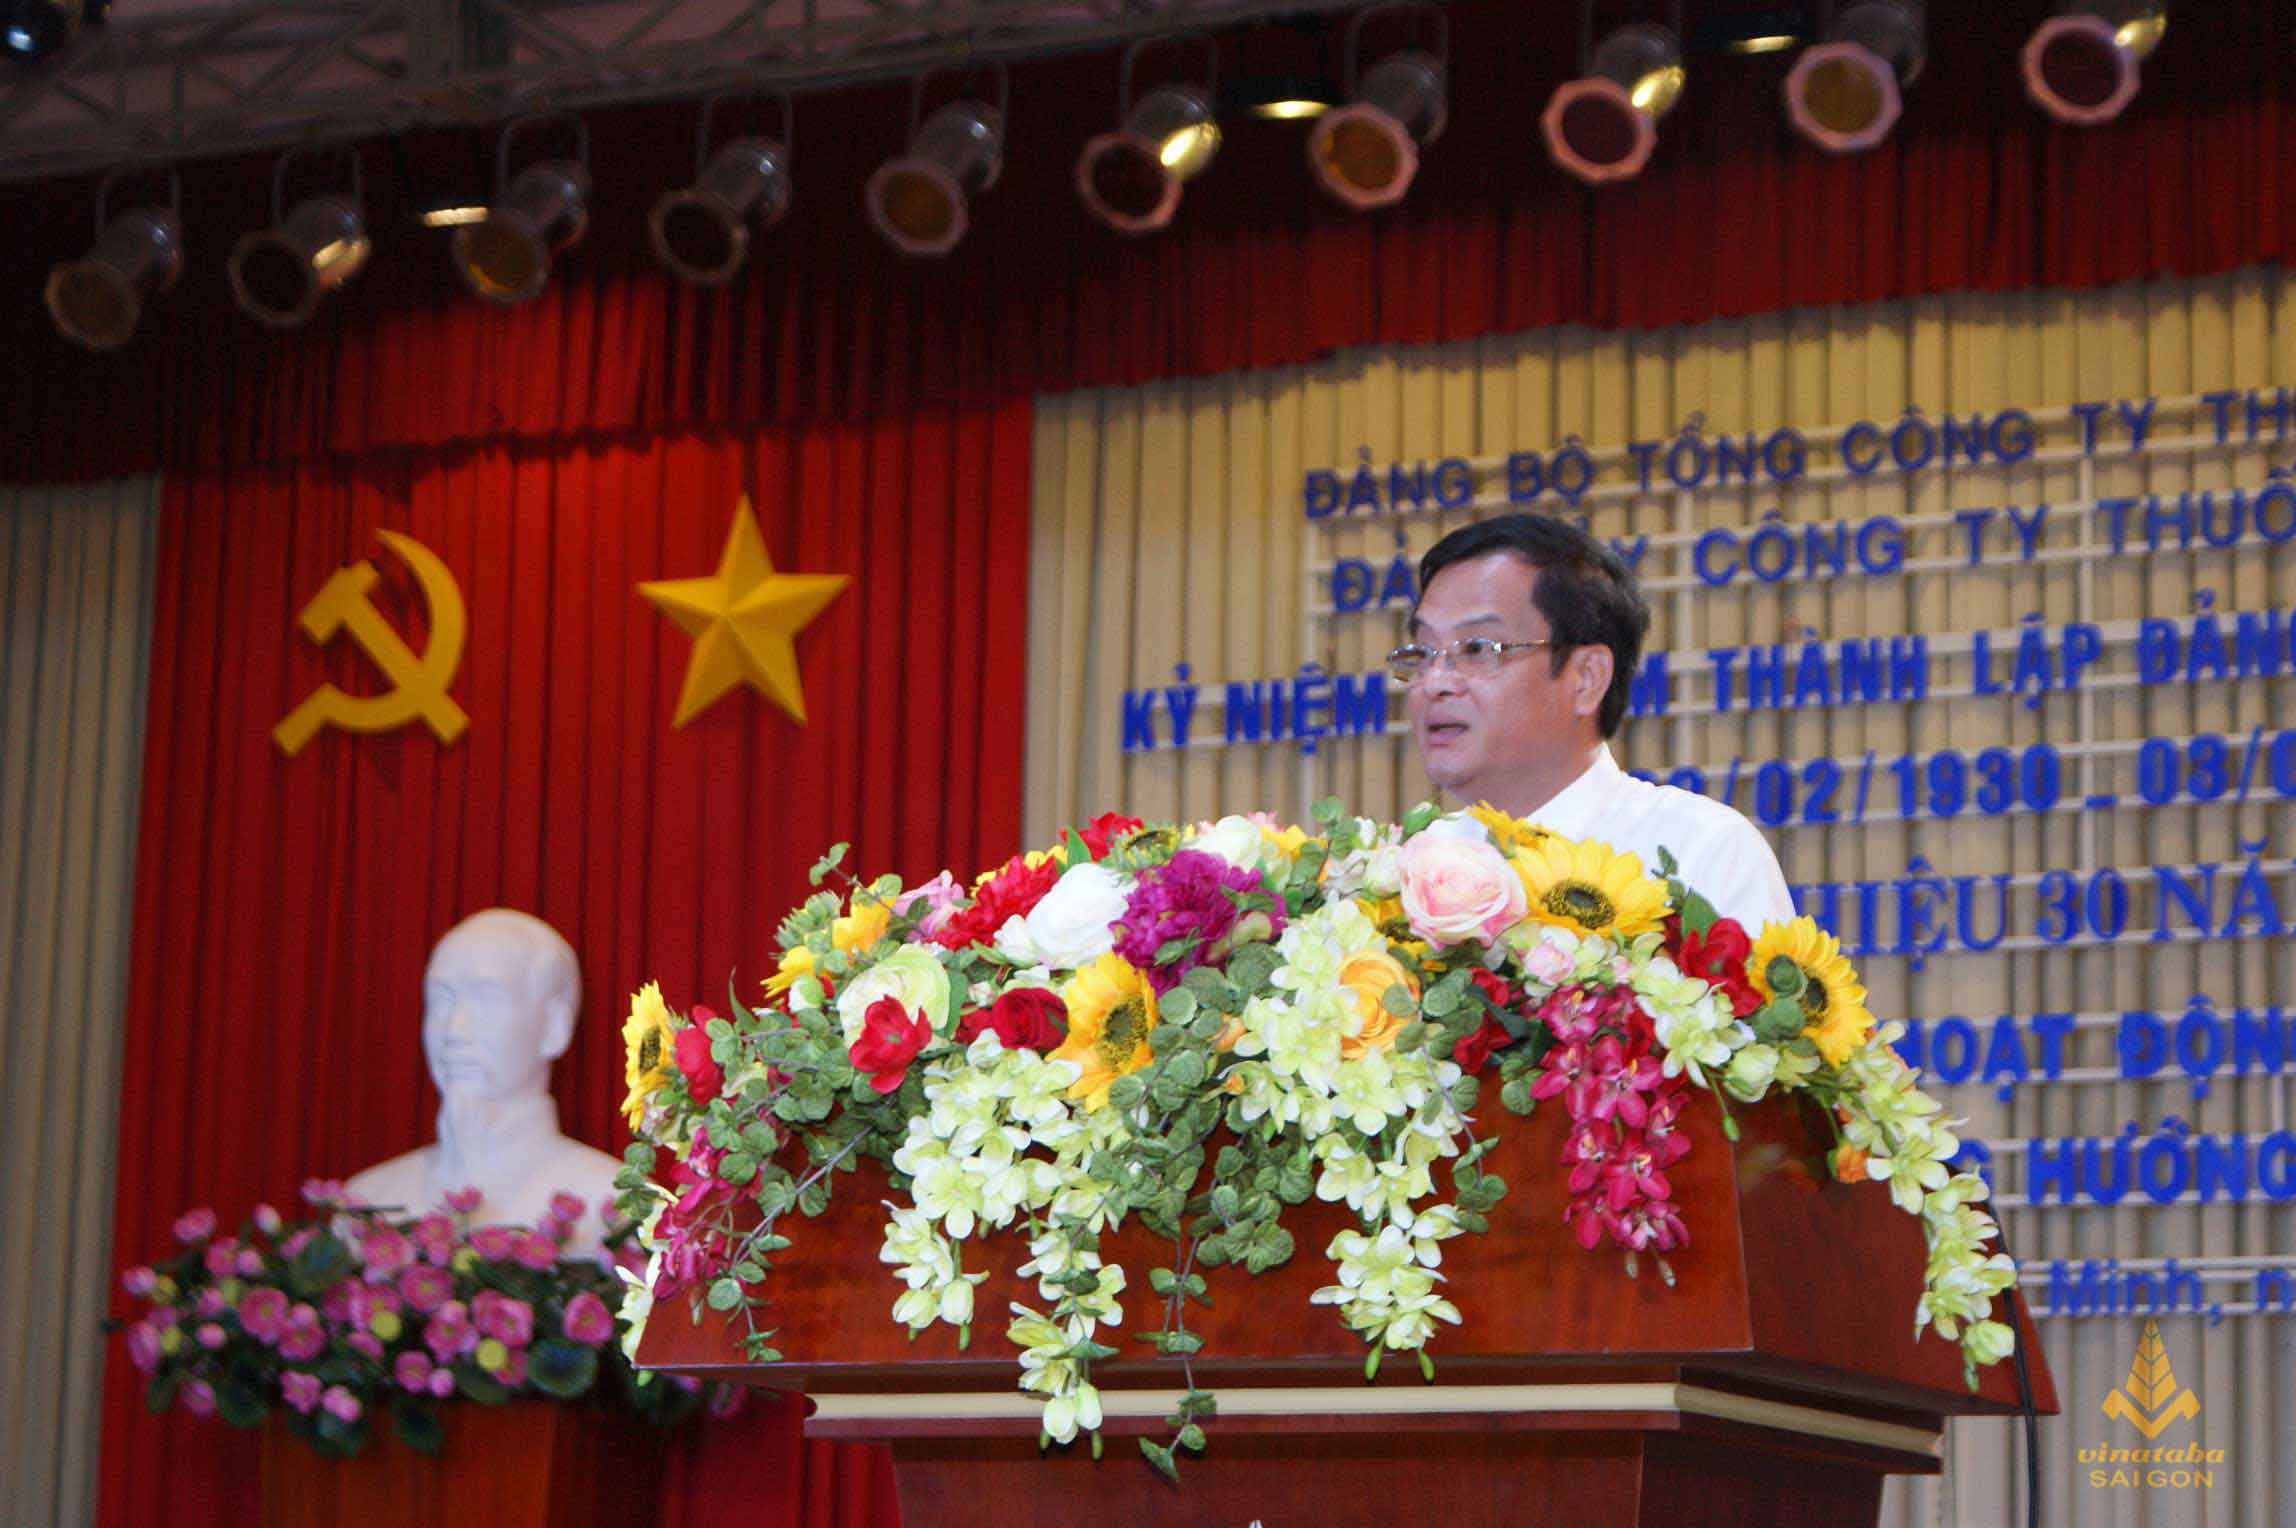 Đồng chí Nguyễn Duy Khánh - Bí thư Đảng ủy, Giám đốc Công ty Thuốc lá Sài Gòn trình bày báo cáo tổng kết hoạt động Đảng bộ trong năm 2016 và phương hướng nhiệm vụ năm 2017